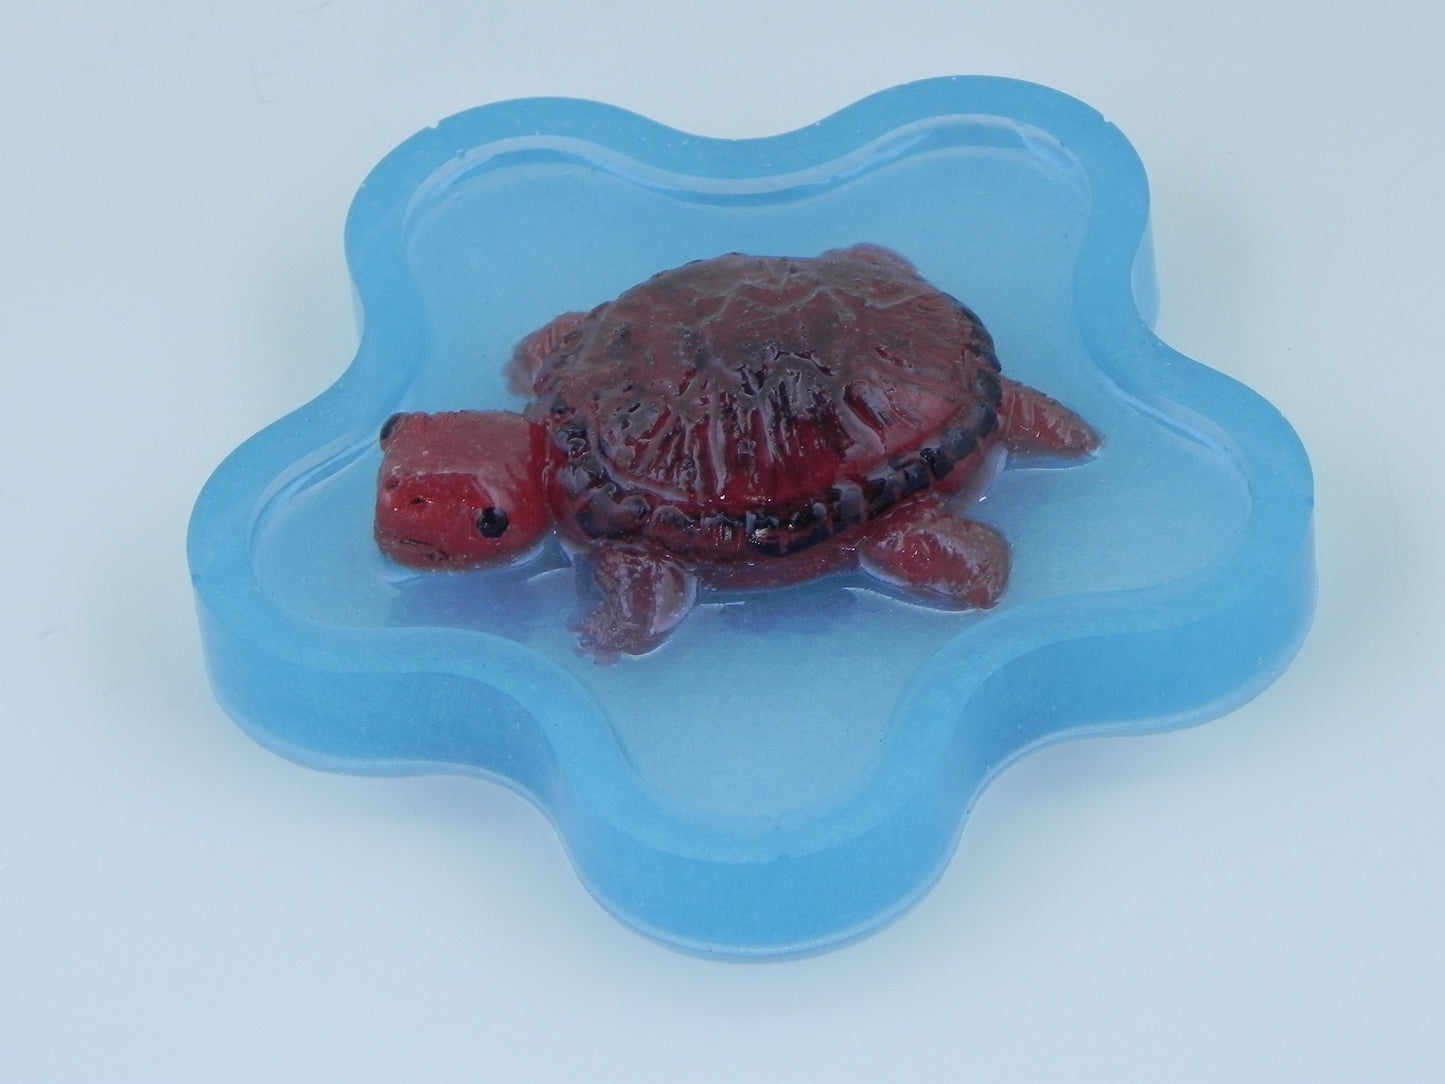 "Turtle in resin dish"